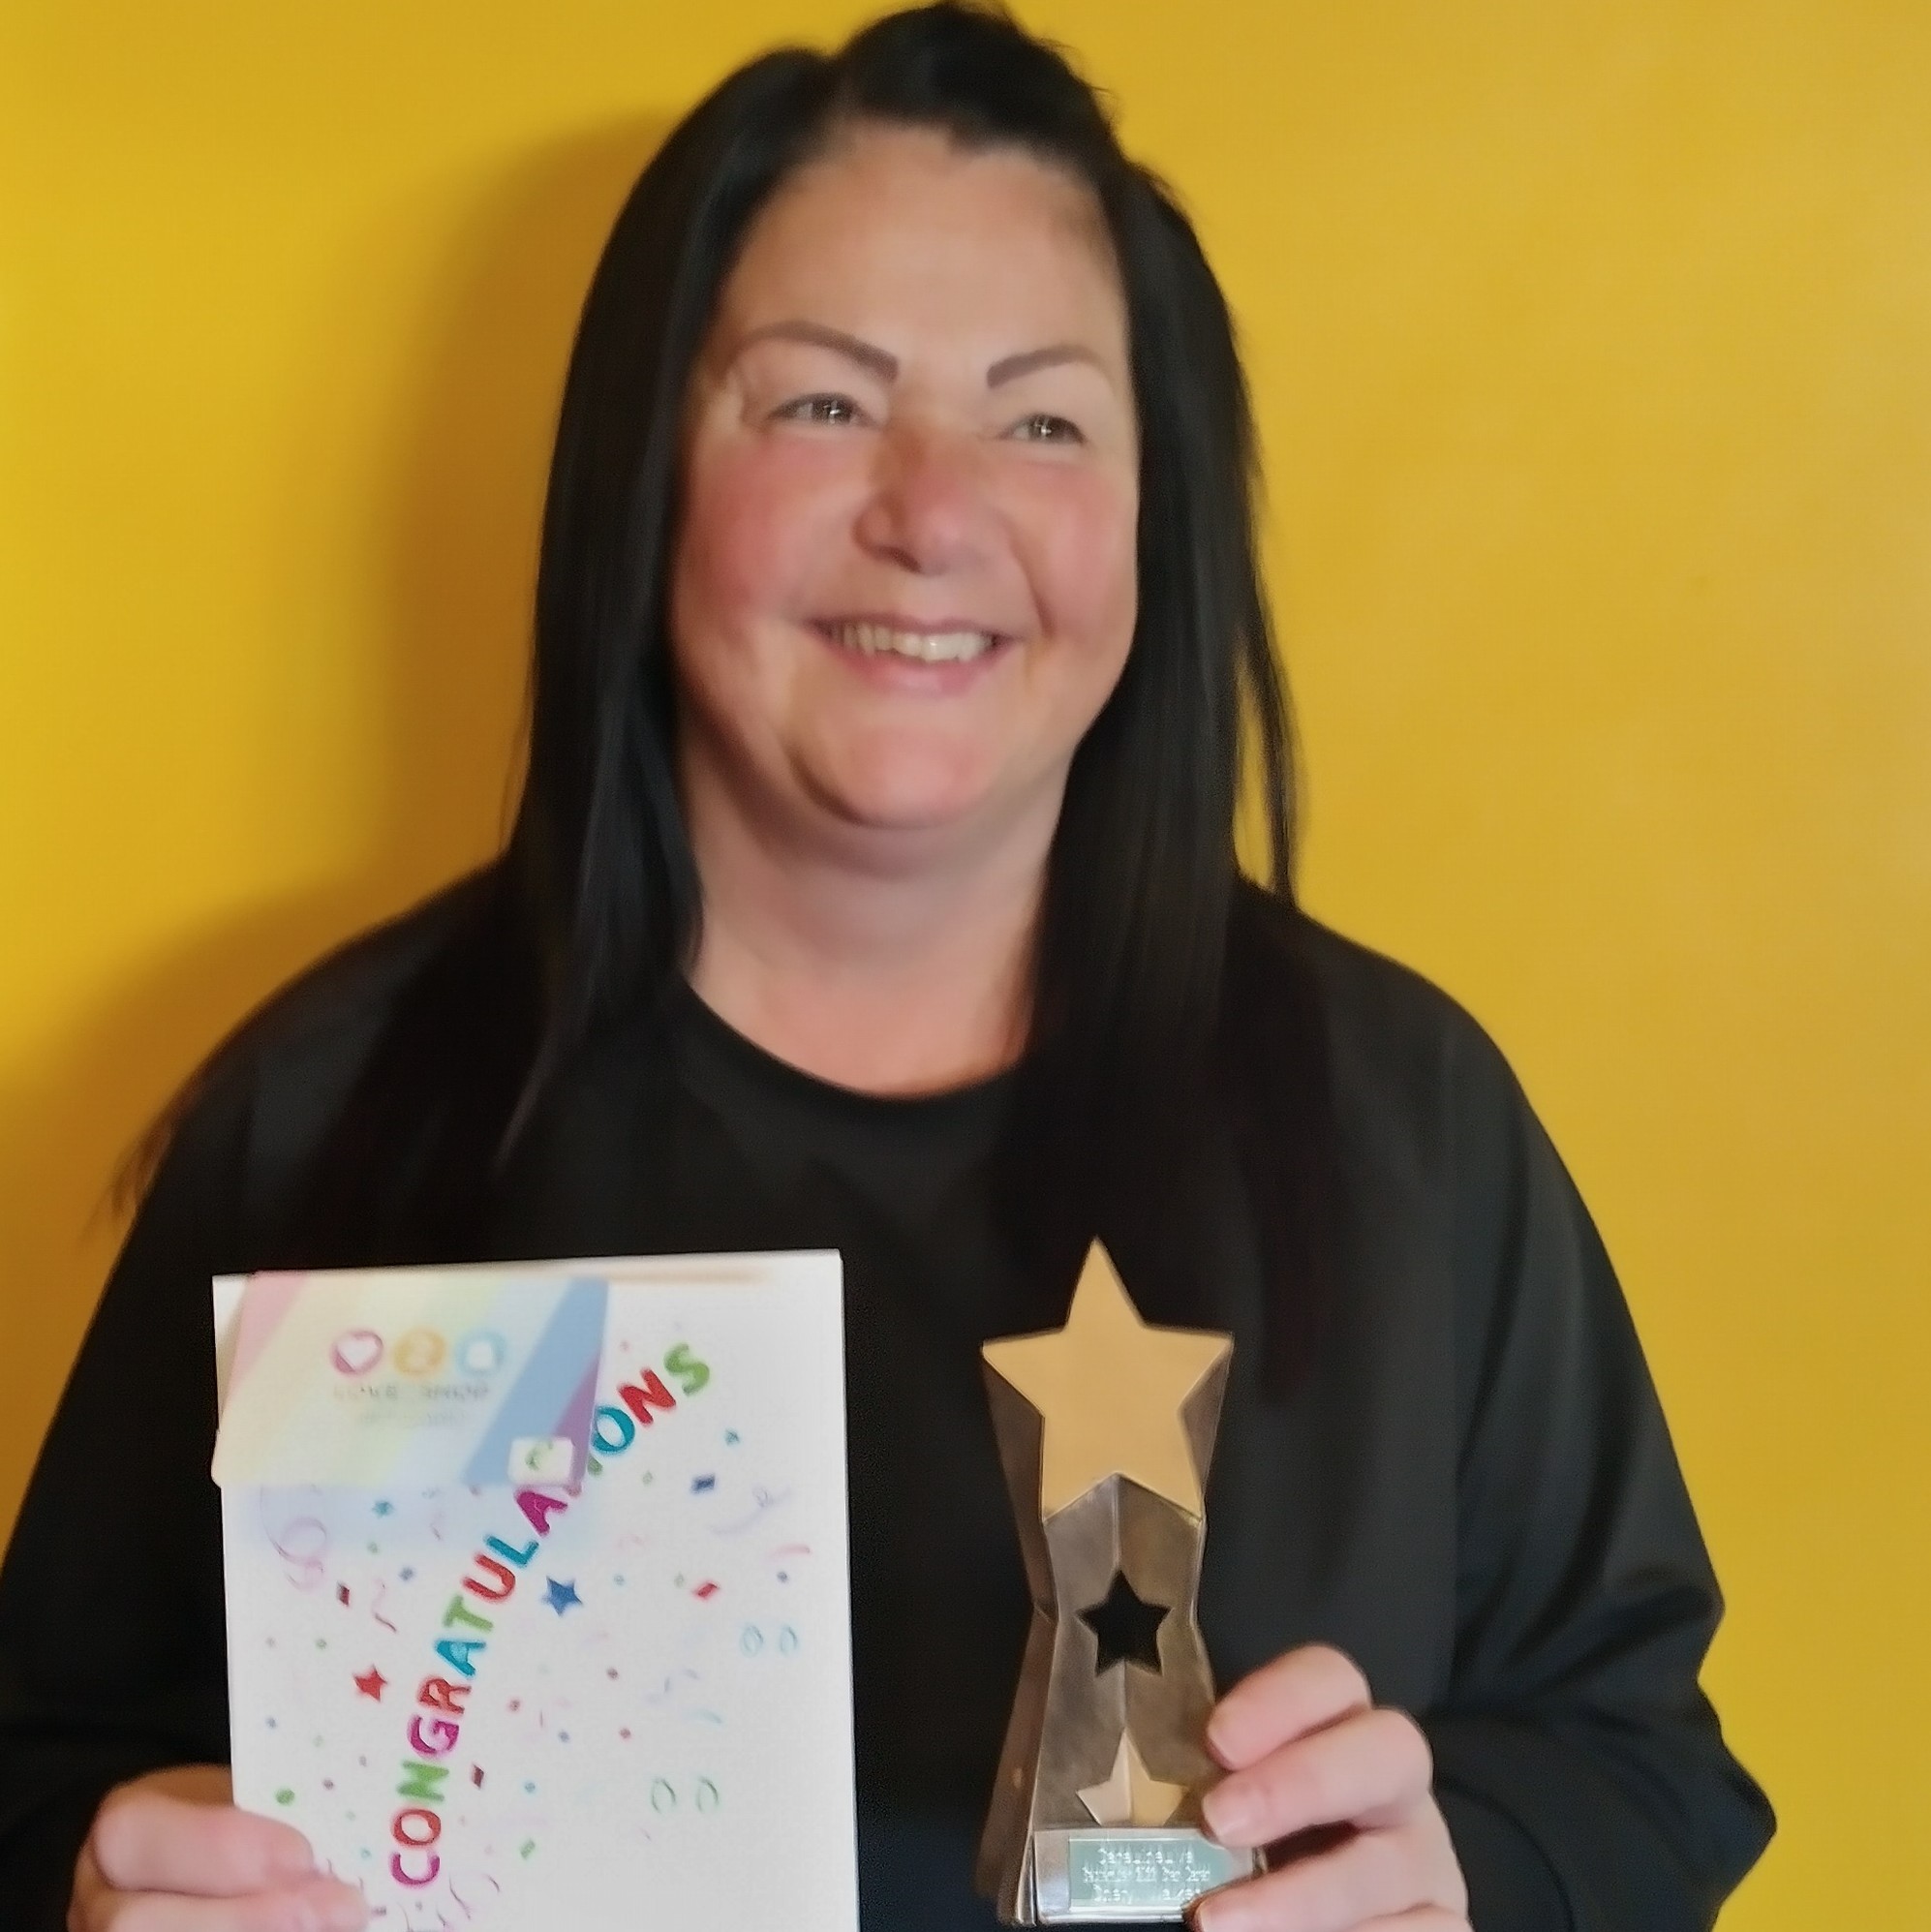 Star Carer for September: Cheryl Walker from Brightening Lives